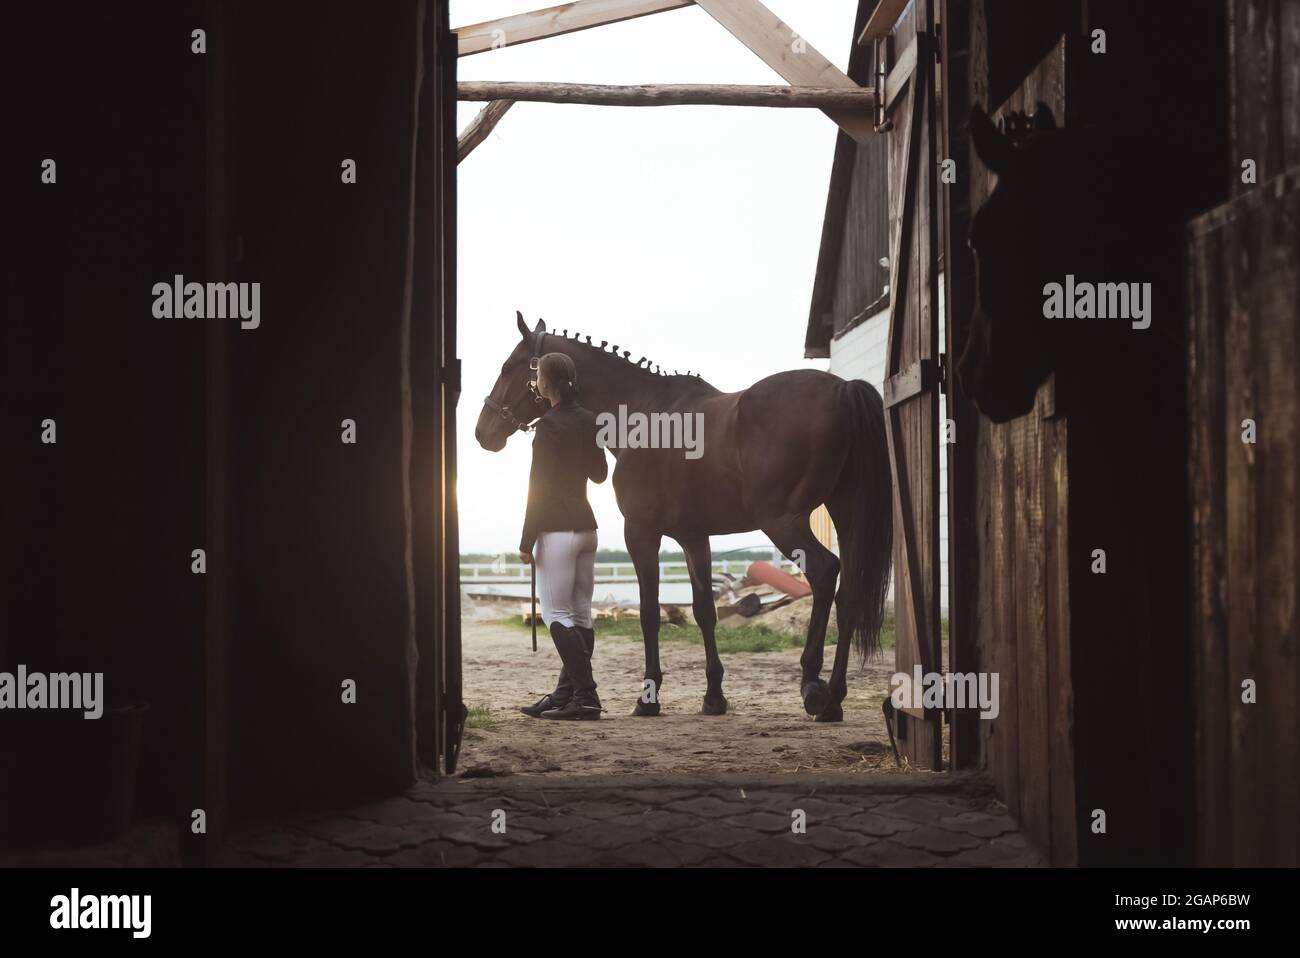 Horsewoman debout avec son cheval de baie sombre à l'extérieur de l'écurie.  Poser pour la caméra. Vue depuis la porte de l'écurie. Un autre cheval peut  être vu dans la stalle. Prise